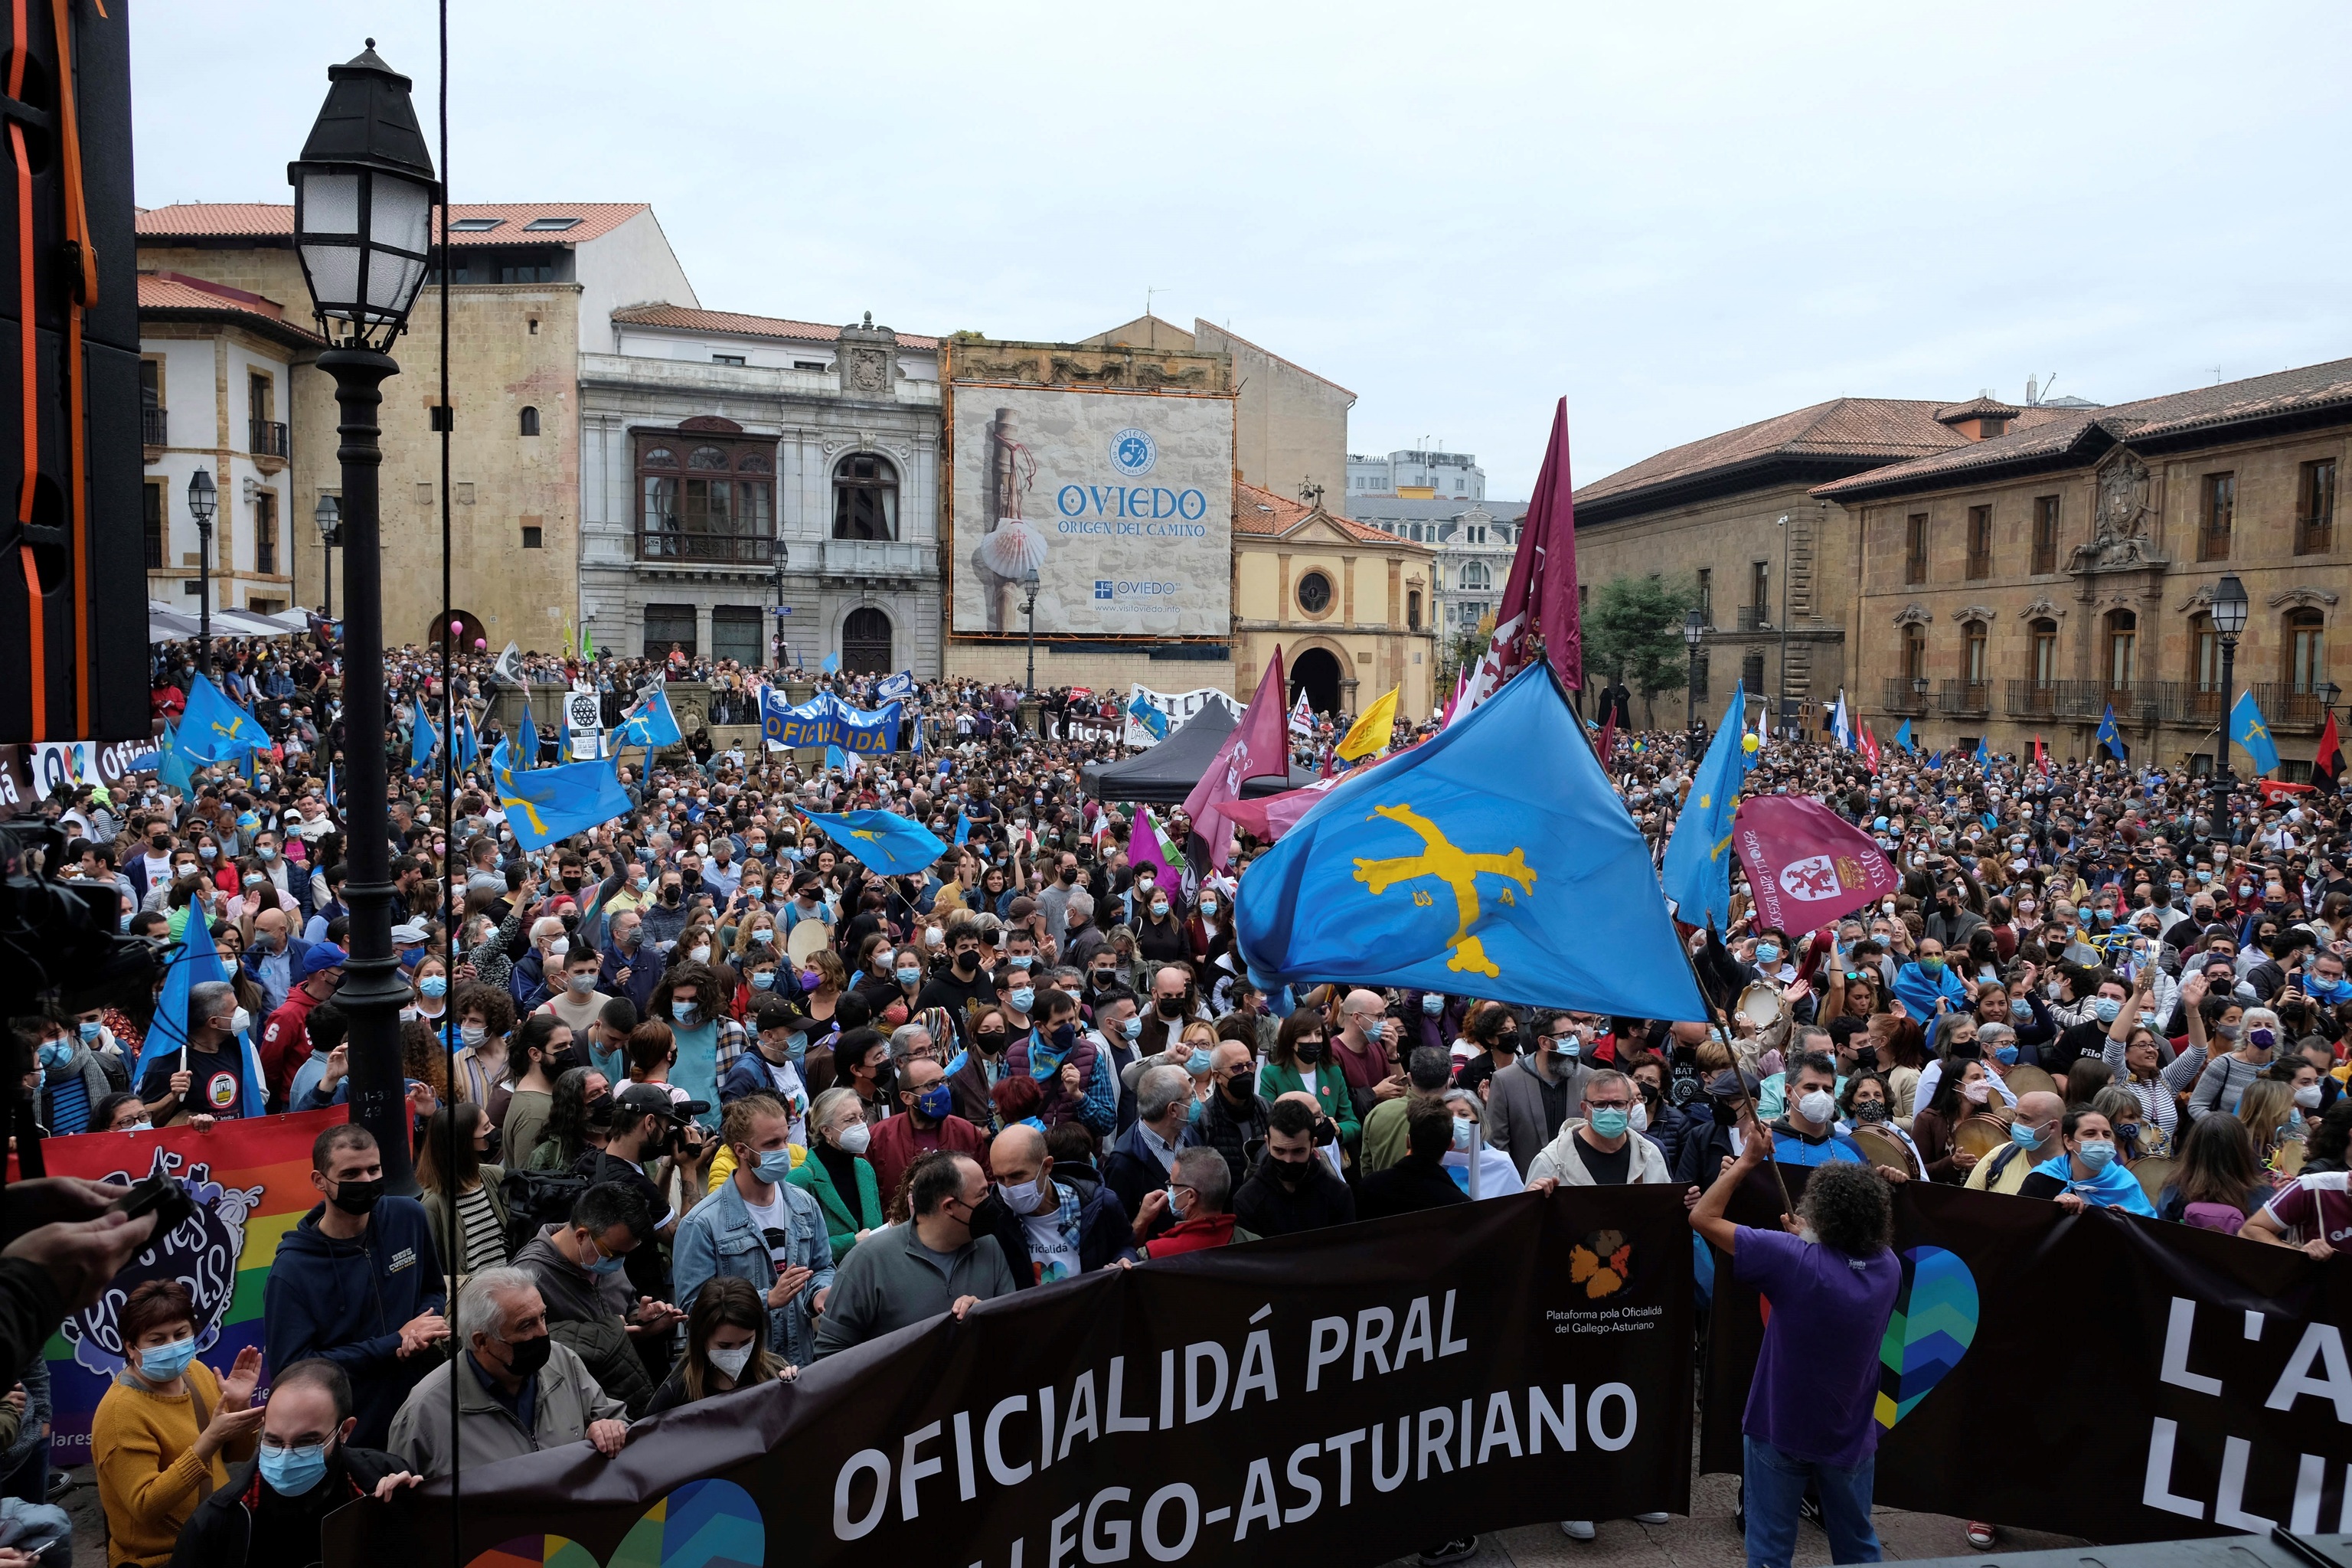 La plaza de la Catedral de Oviedo, llena con los participantes de la manifestación a favor de la oficialidad del asturiano.